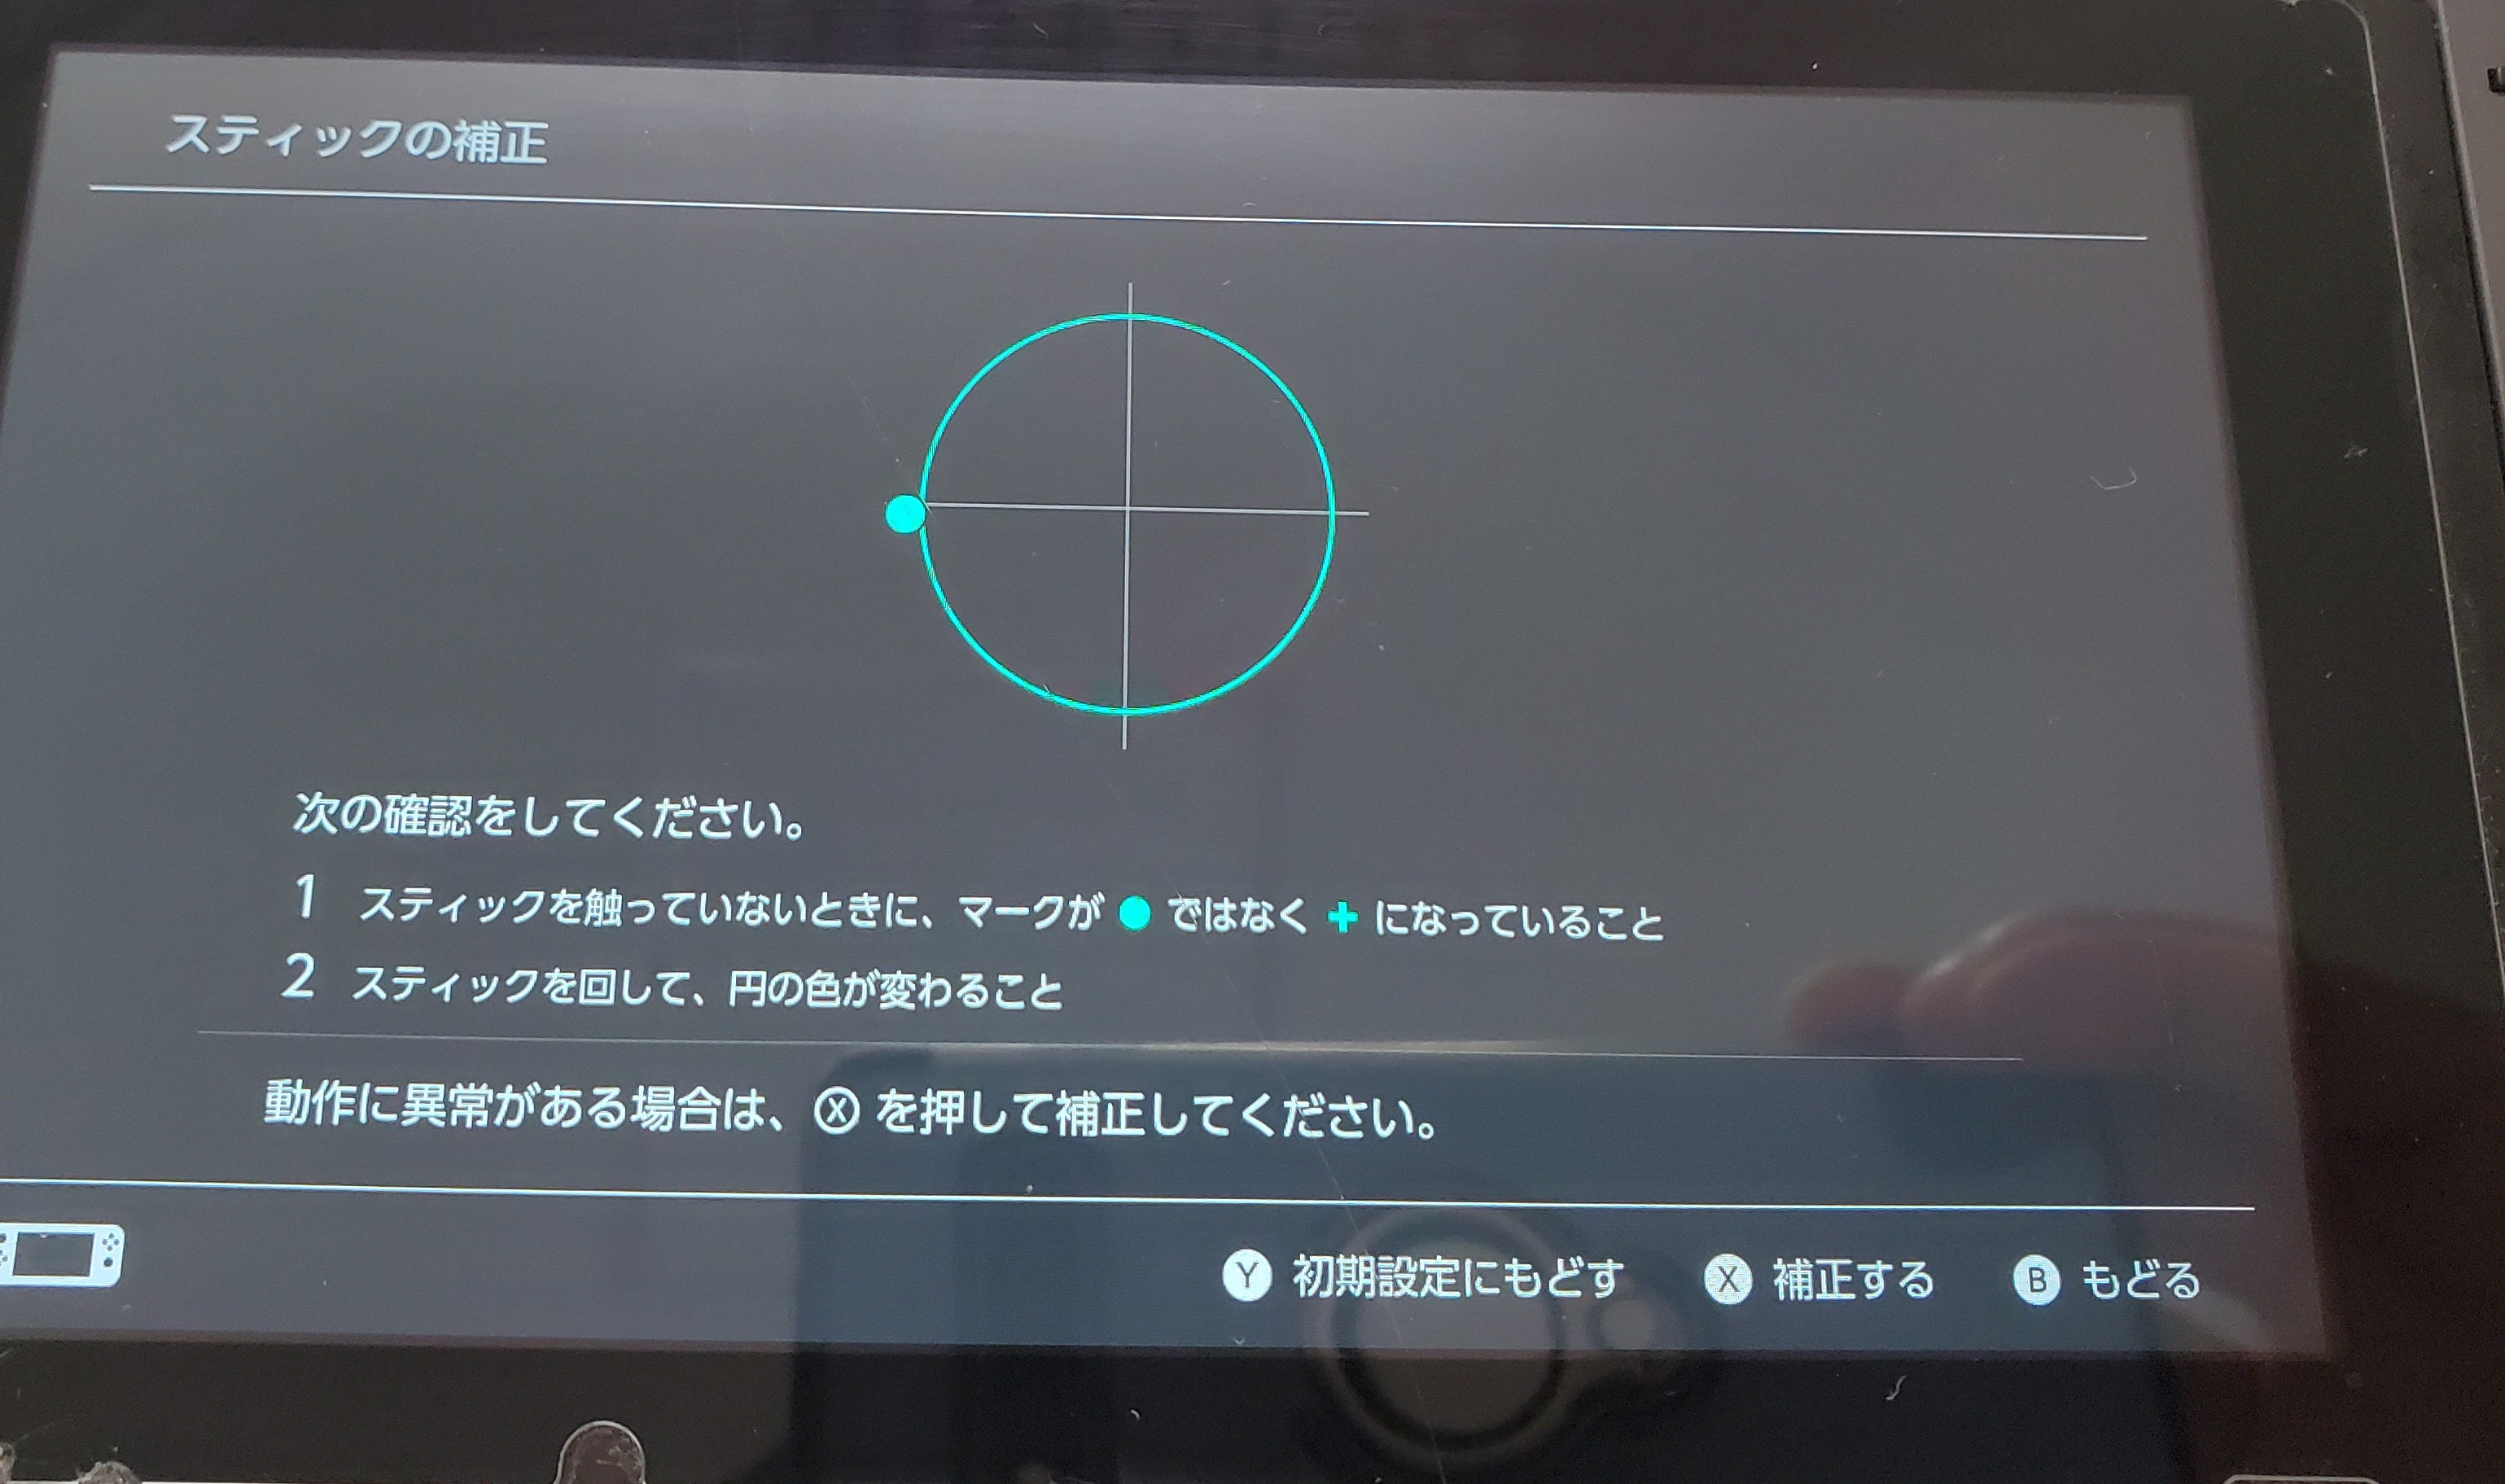 フォートナイト キャラクターが勝手に動く Switch Nintendo3ds Psp 修理のゲームホスピタル Switch Nintendo3ds ニンテンドーds Psp 修理